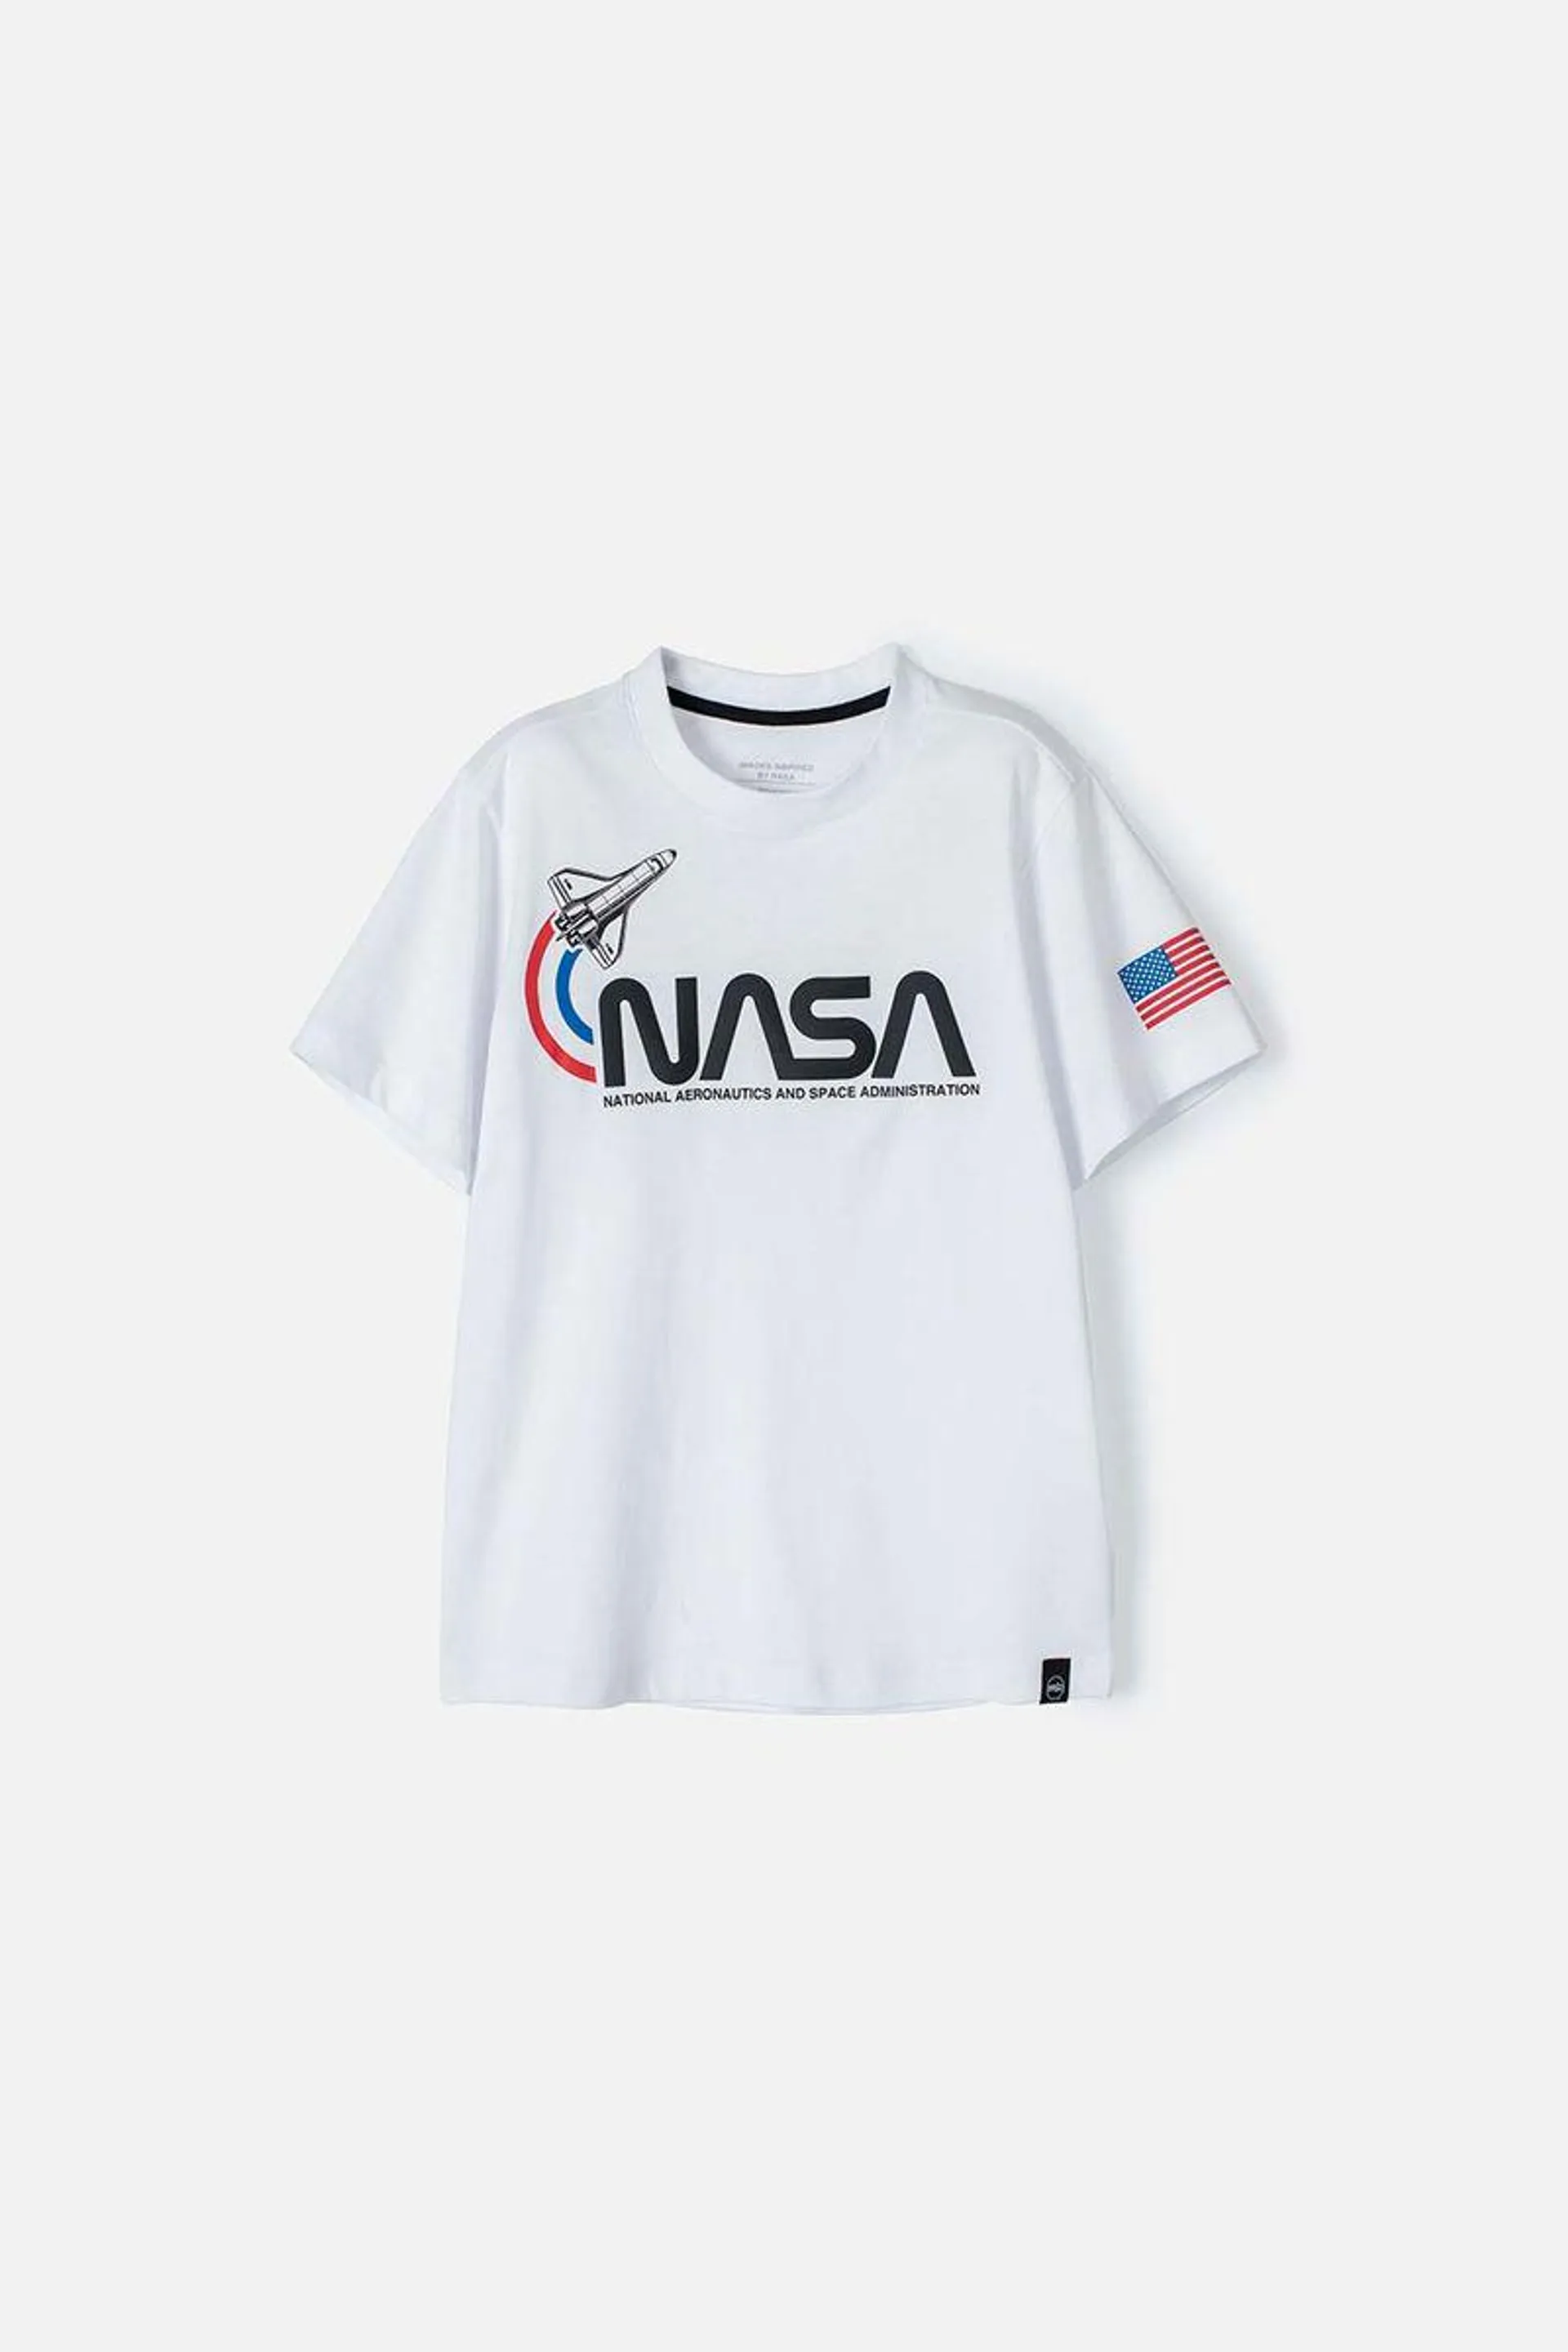 Camiseta de la Nasa blanca manga corta para niño